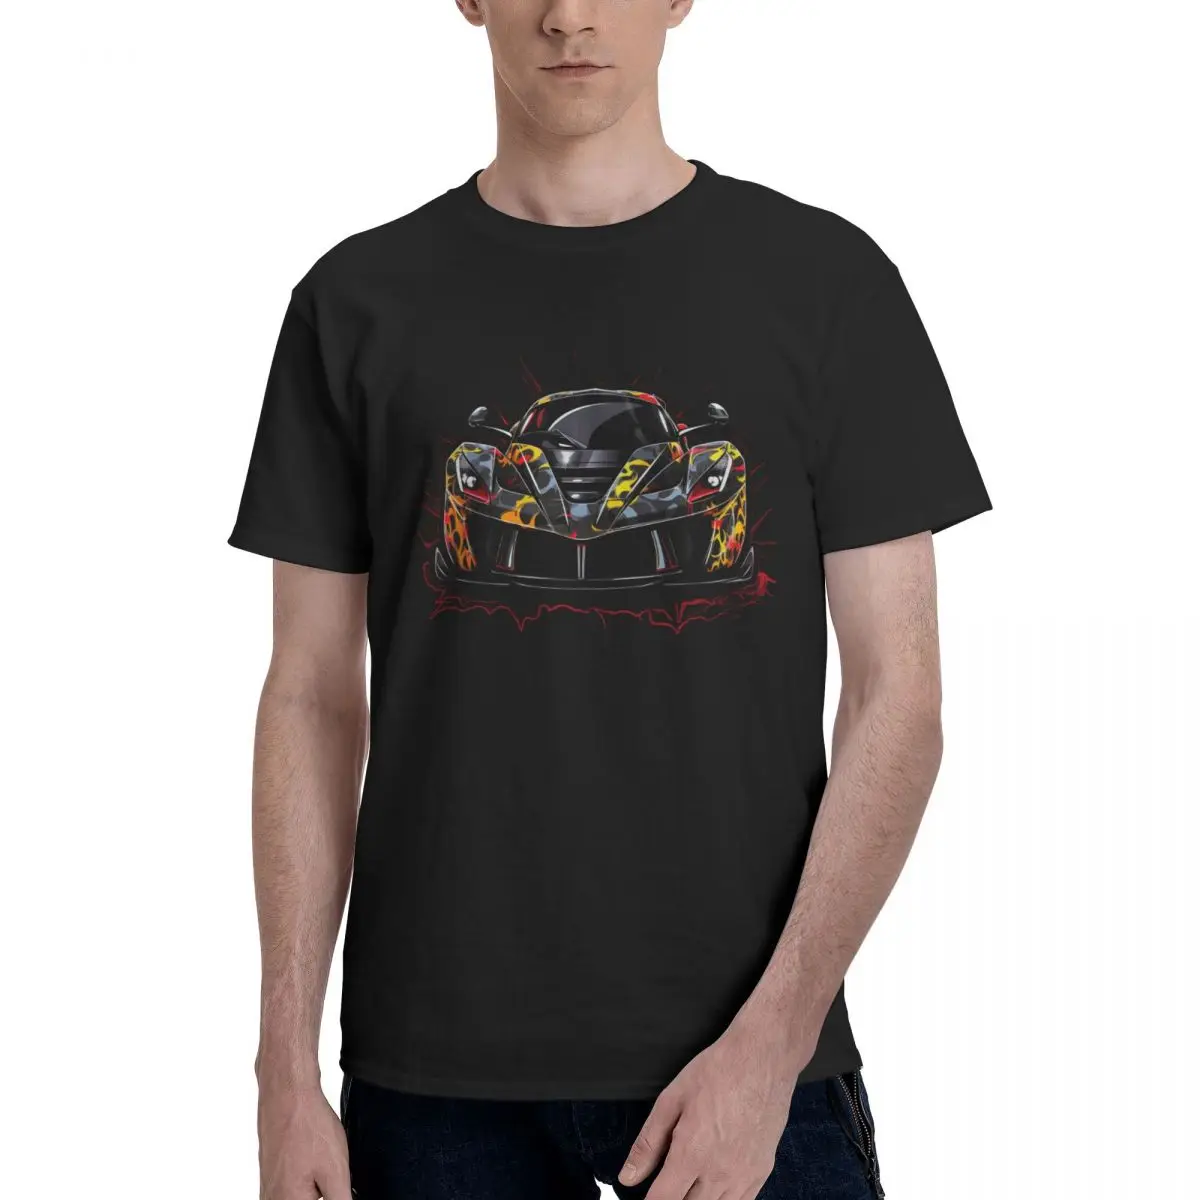 

Страстная Спортивная футболка с автомобилем, хлопковая Футболка в стиле хип-хоп с граффити, футболка с коротким рукавом в эстетическом стиле, пляжная одежда большого размера